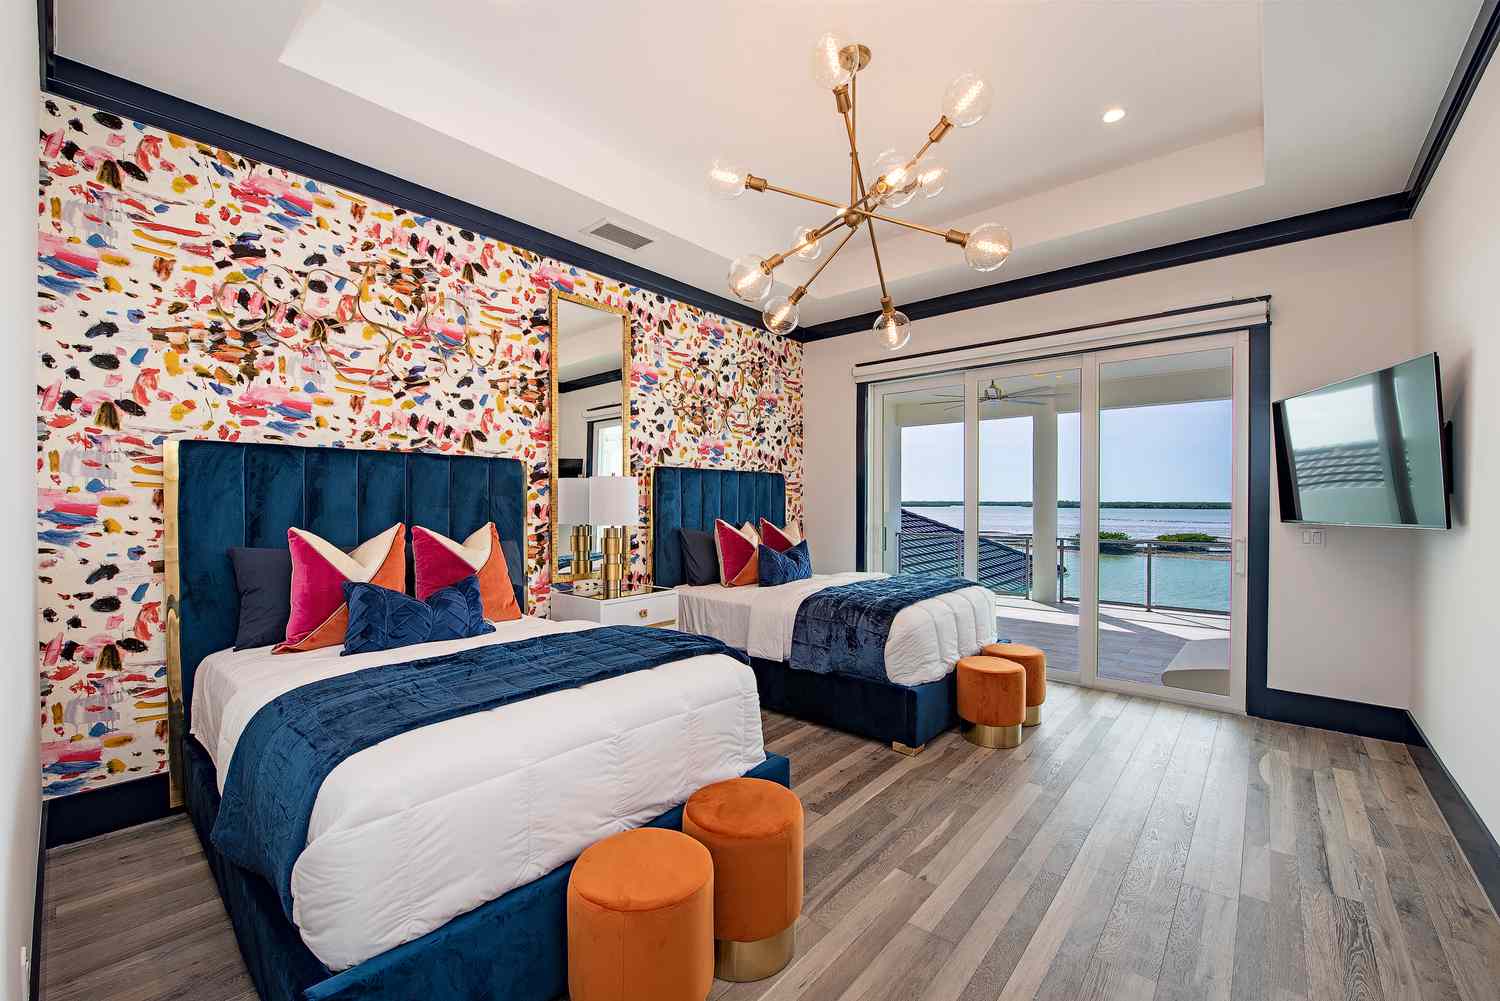 Un dormitorio con dos camas de matrimonio y papel pintado de colores en una pared de acento